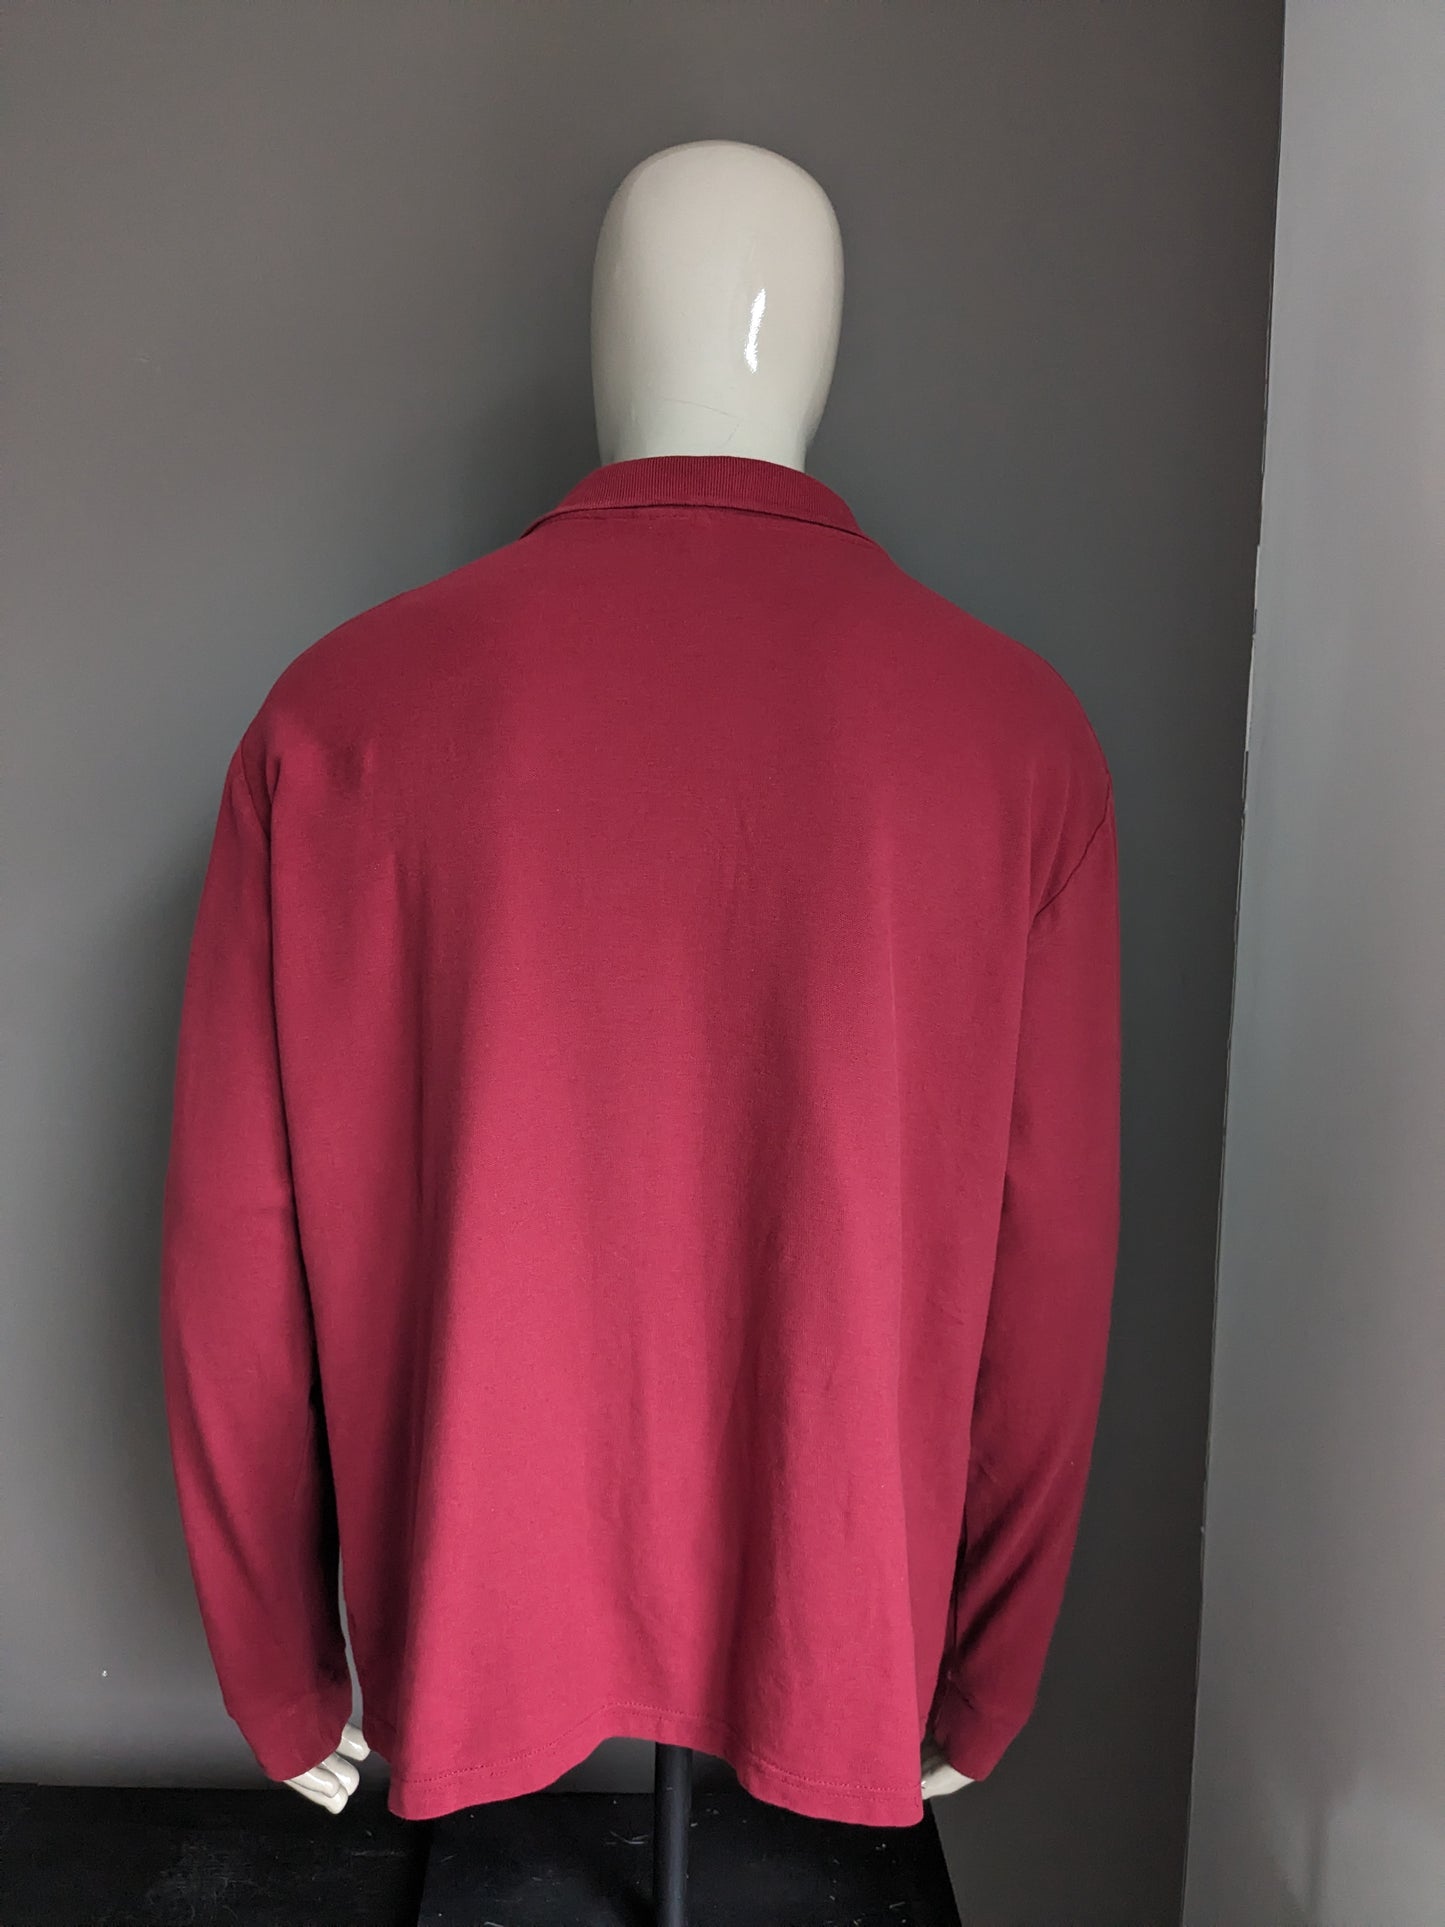 Suéter de polo de ballena asesina. Color rojo oscuro. Tamaño 3xl / xxxl.